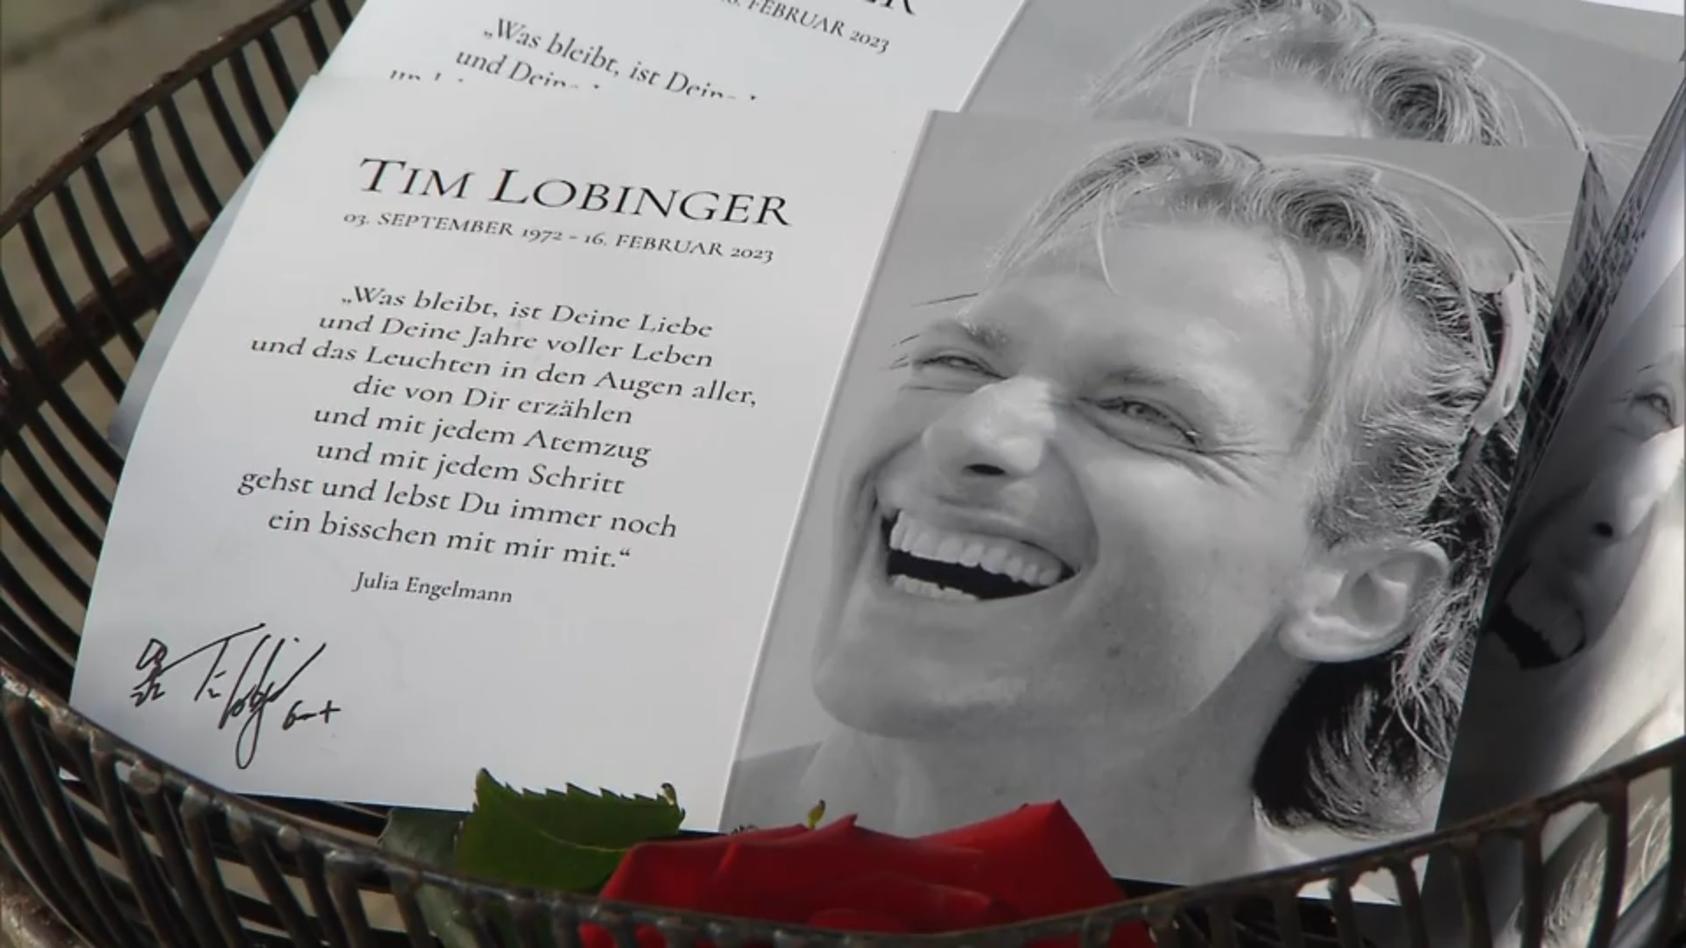 Trauerfeier für Tim Lobinger in München Freunde und Familie nehmen Abschied